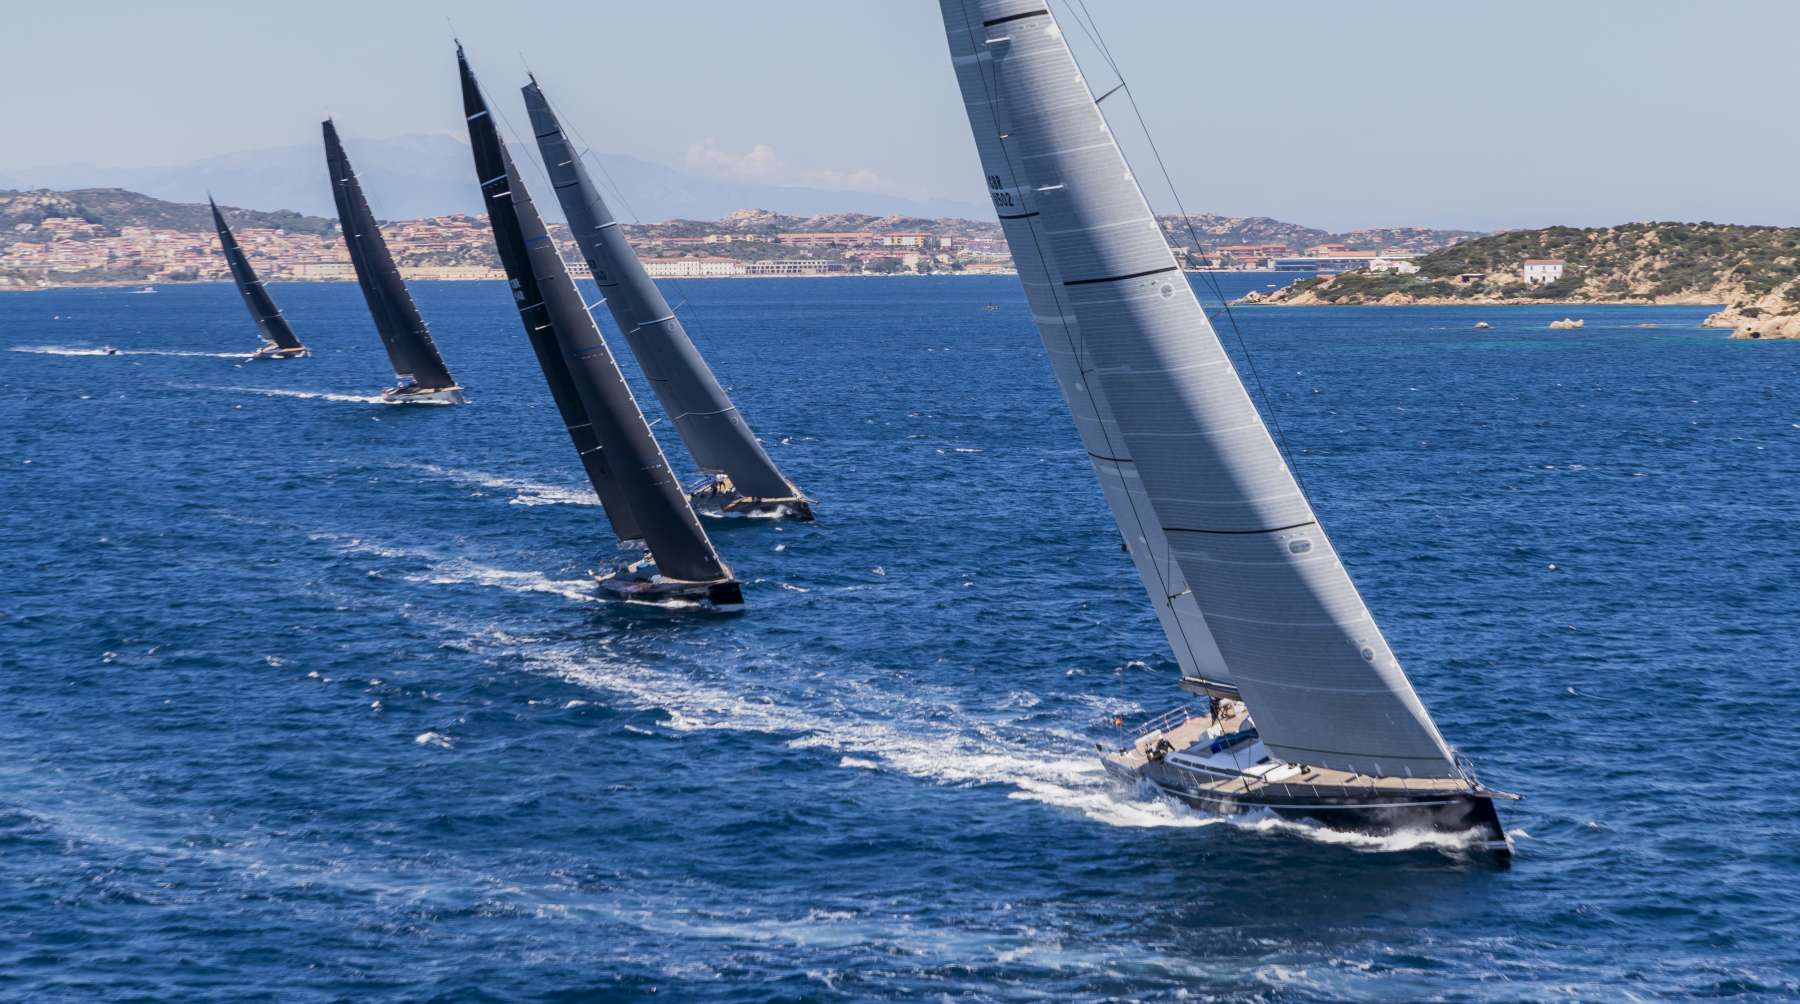 Dal 2 al 6 giugno la Loro Piana Superyacht Regatta 2020 - NEWS - Yacht Club Costa Smeralda